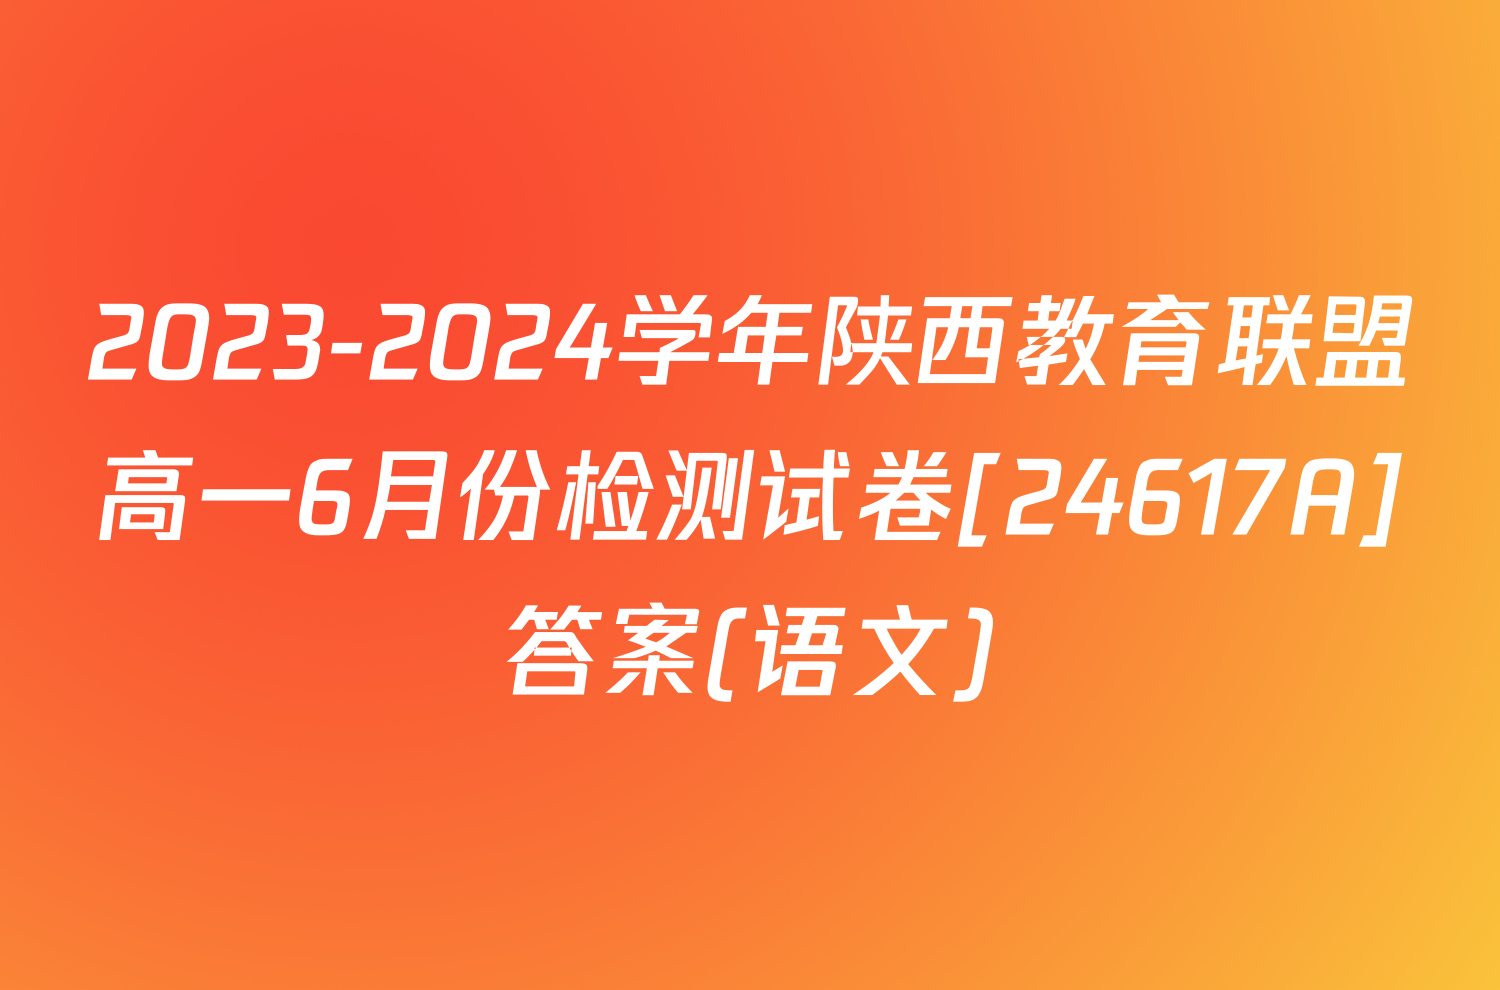 2023-2024学年陕西教育联盟高一6月份检测试卷[24617A]答案(语文)